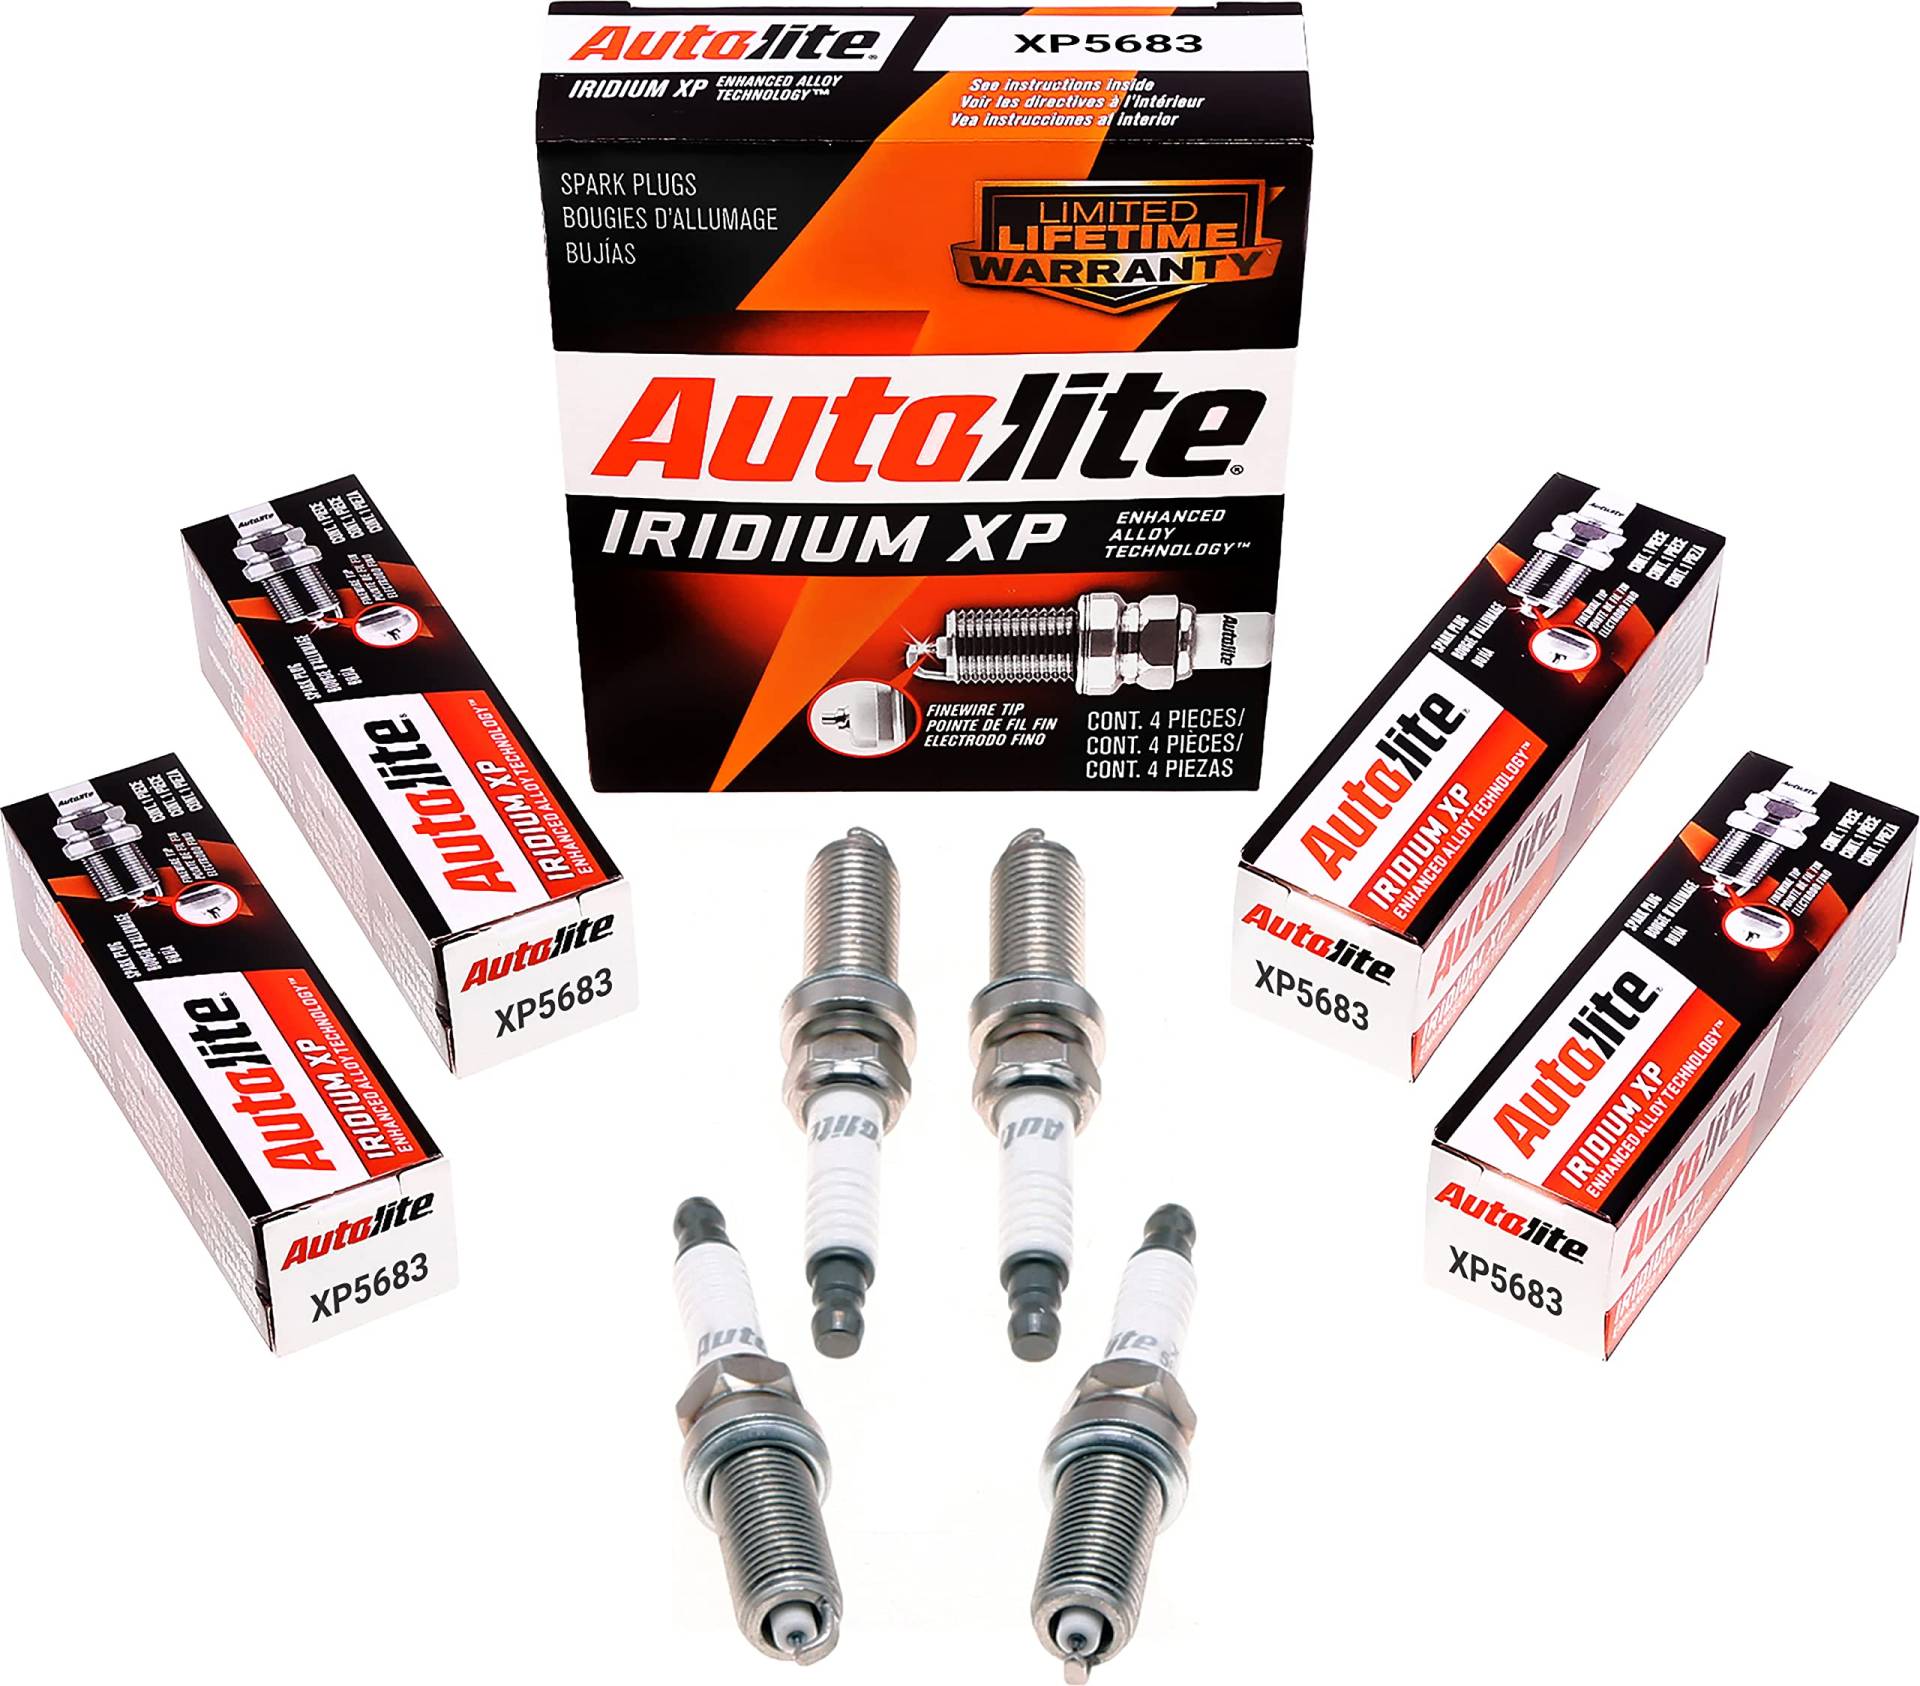 Autolite Iridium XP Automotive Ersatz-Zündkerzen, XP5683, 4 Stück von Autolite